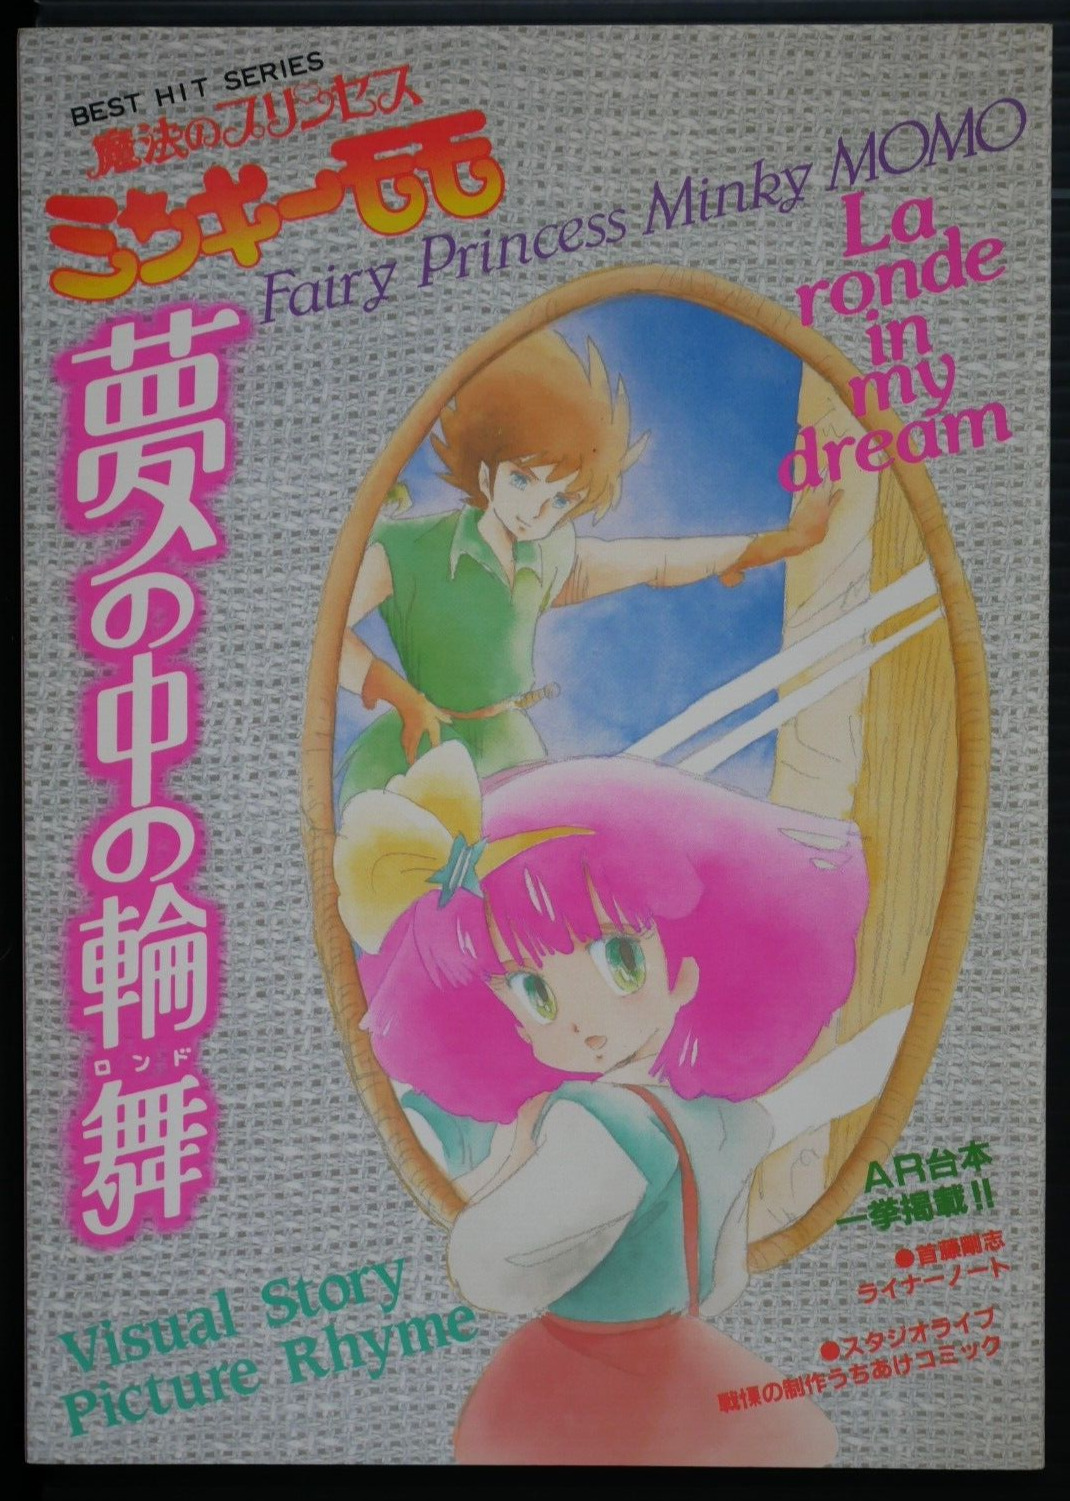 Magical Princess Minky Momo La Ronde Visual Story Book (Damaged) - JAPAN